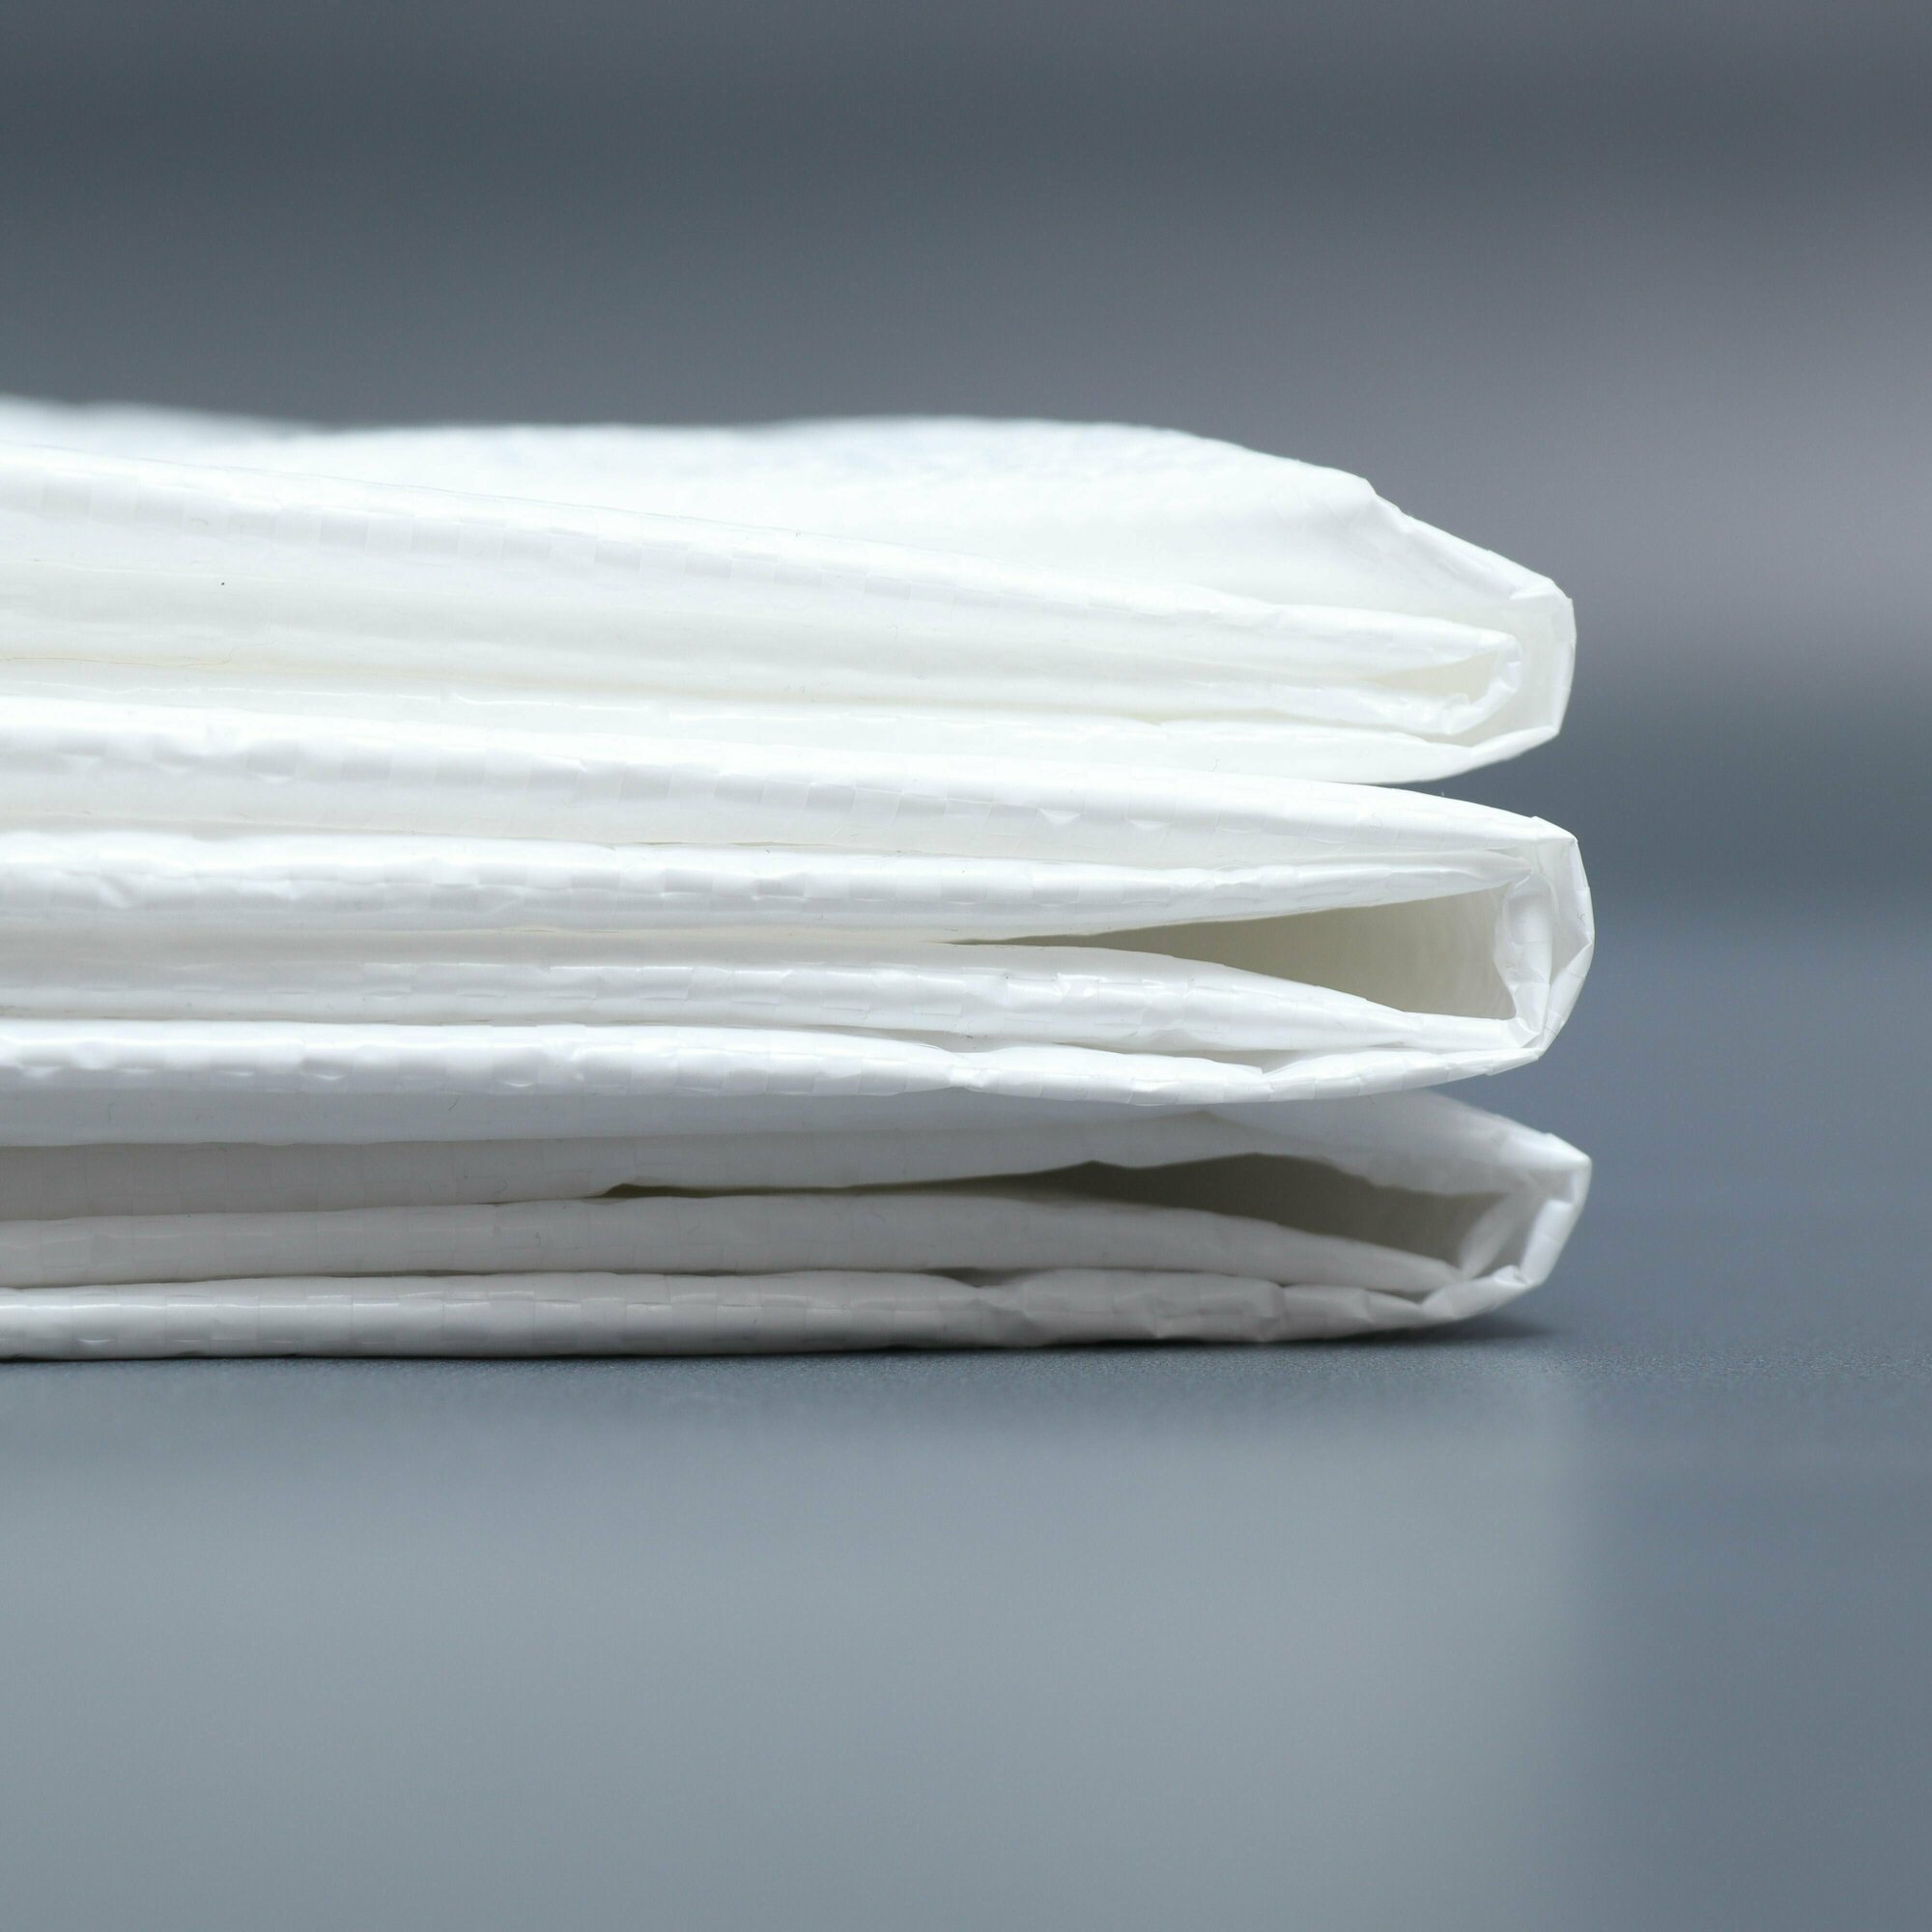 Мешки строительные прочные для хранение одежды отправка посылок, плотность 65 грамм полипропиленовые белые многоразовые 50кг 80л 95х56 см